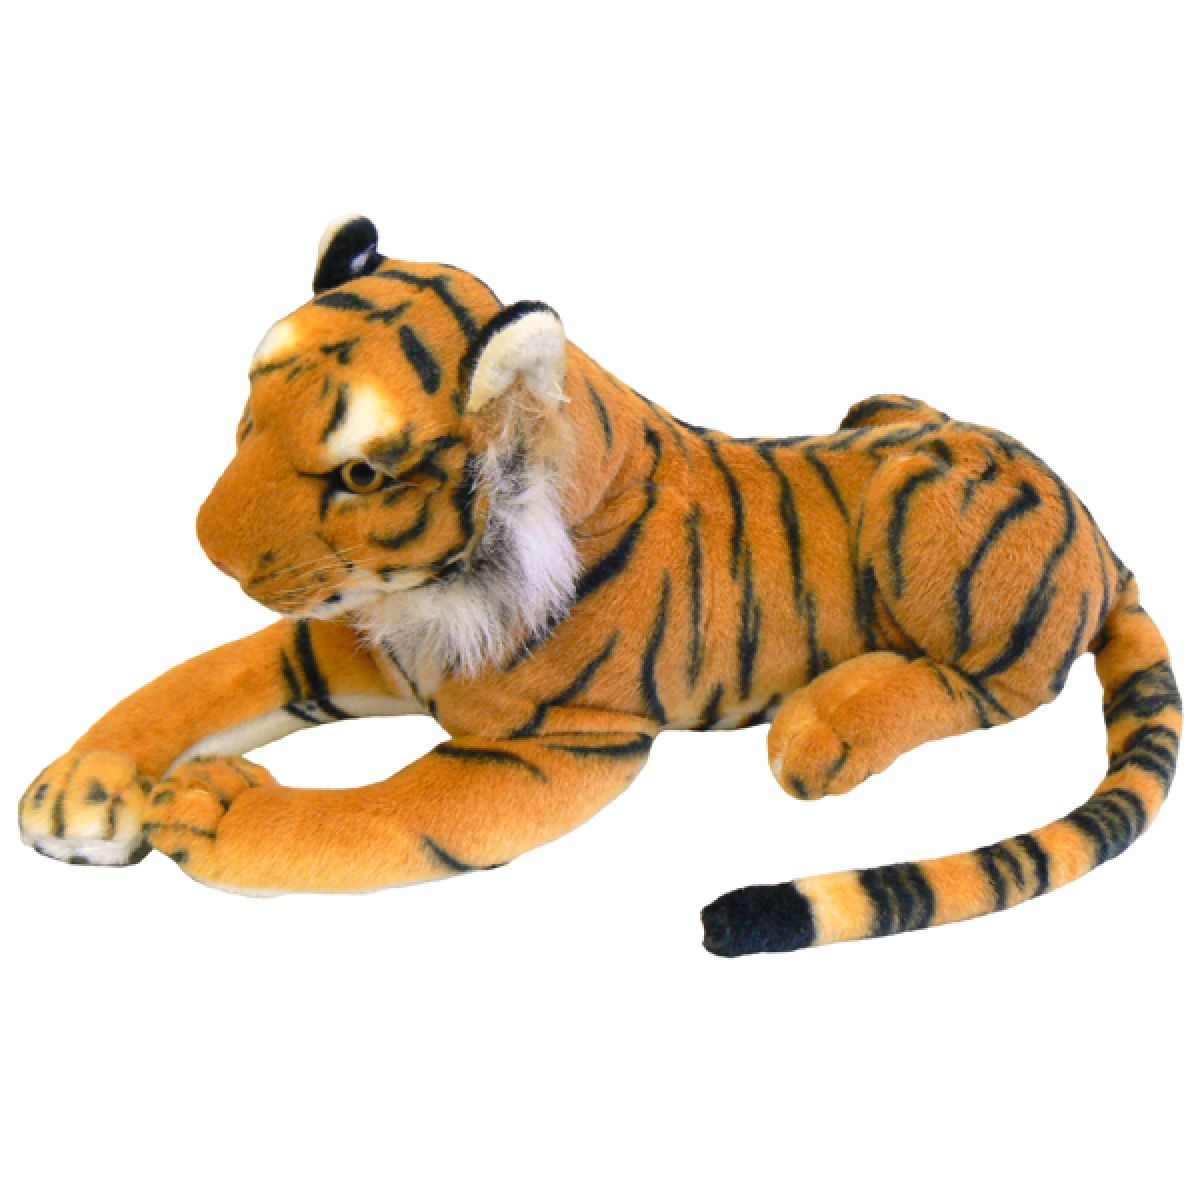 Tygr plyšový hnědý 45 cm